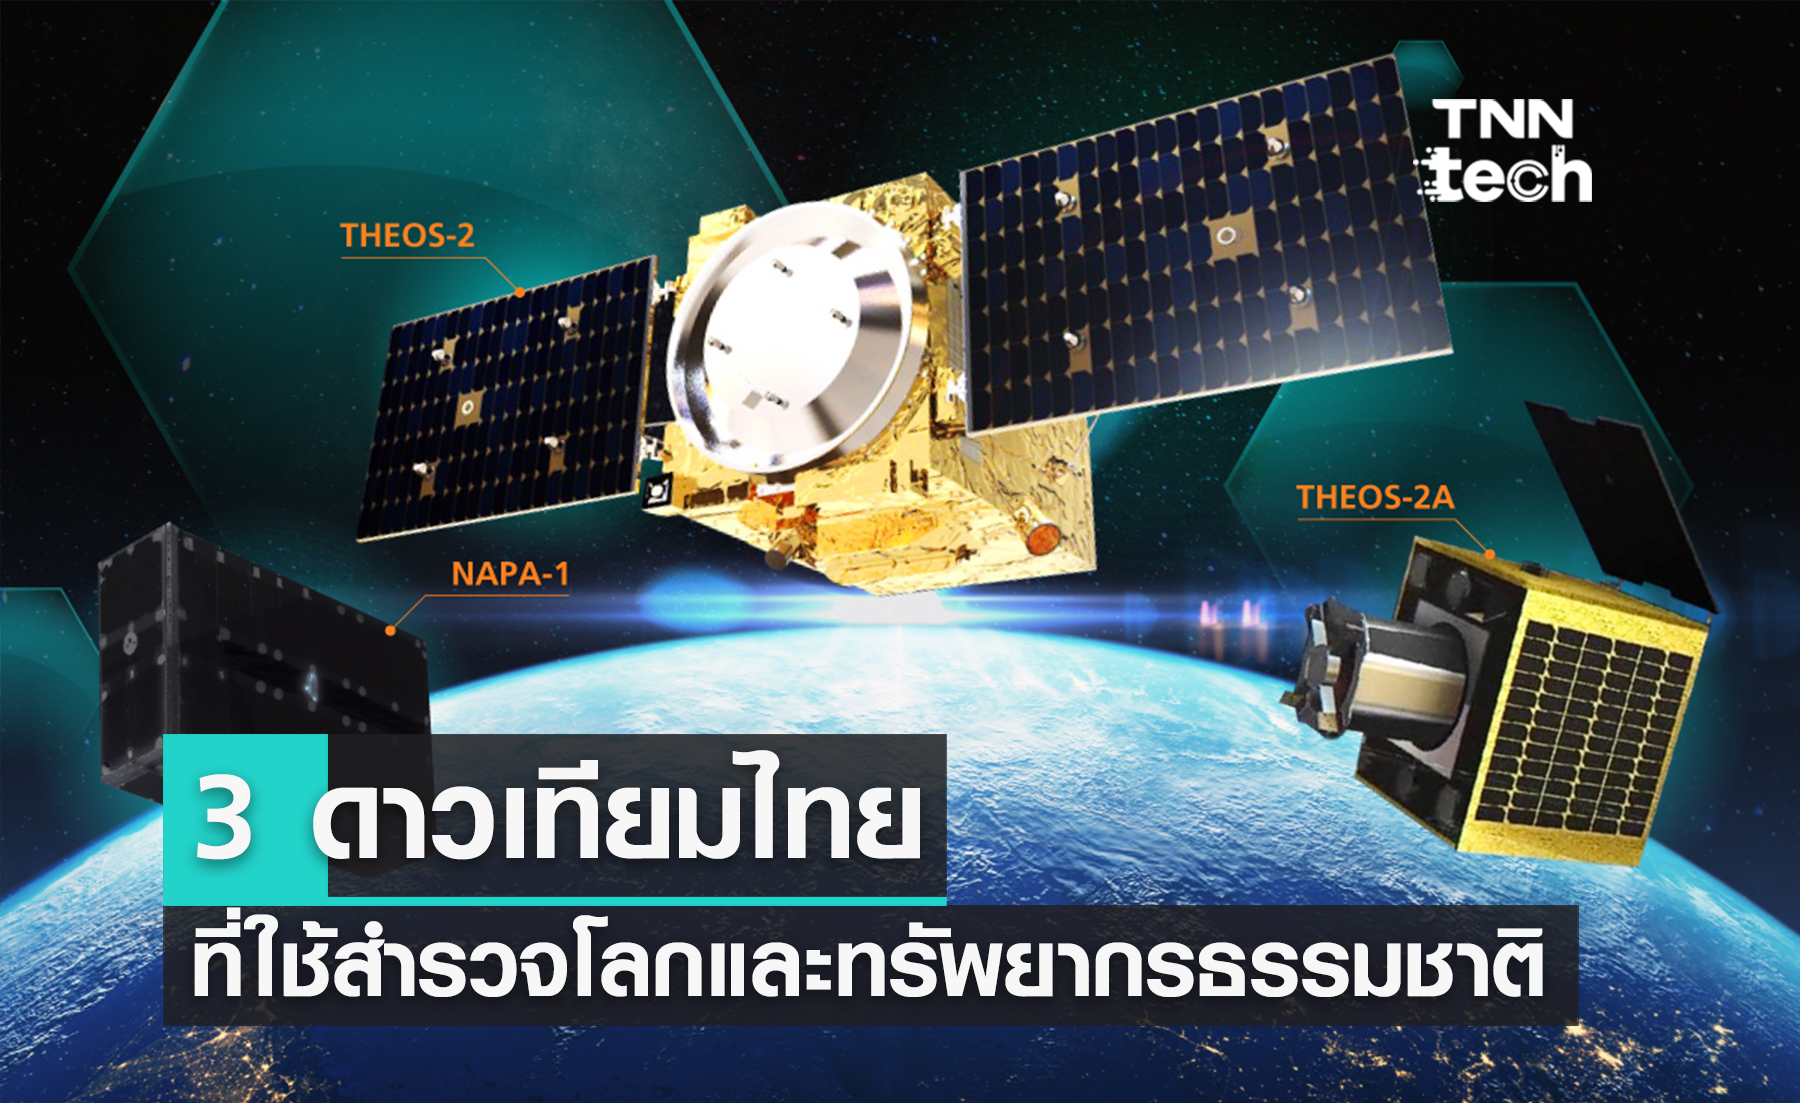 สรุป 3 “ดาวเทียมไทย” ที่ใช้สำรวจโลกและทรัพยากรของธรรมชาติ: THEOS THEOS-2 NAPA-1